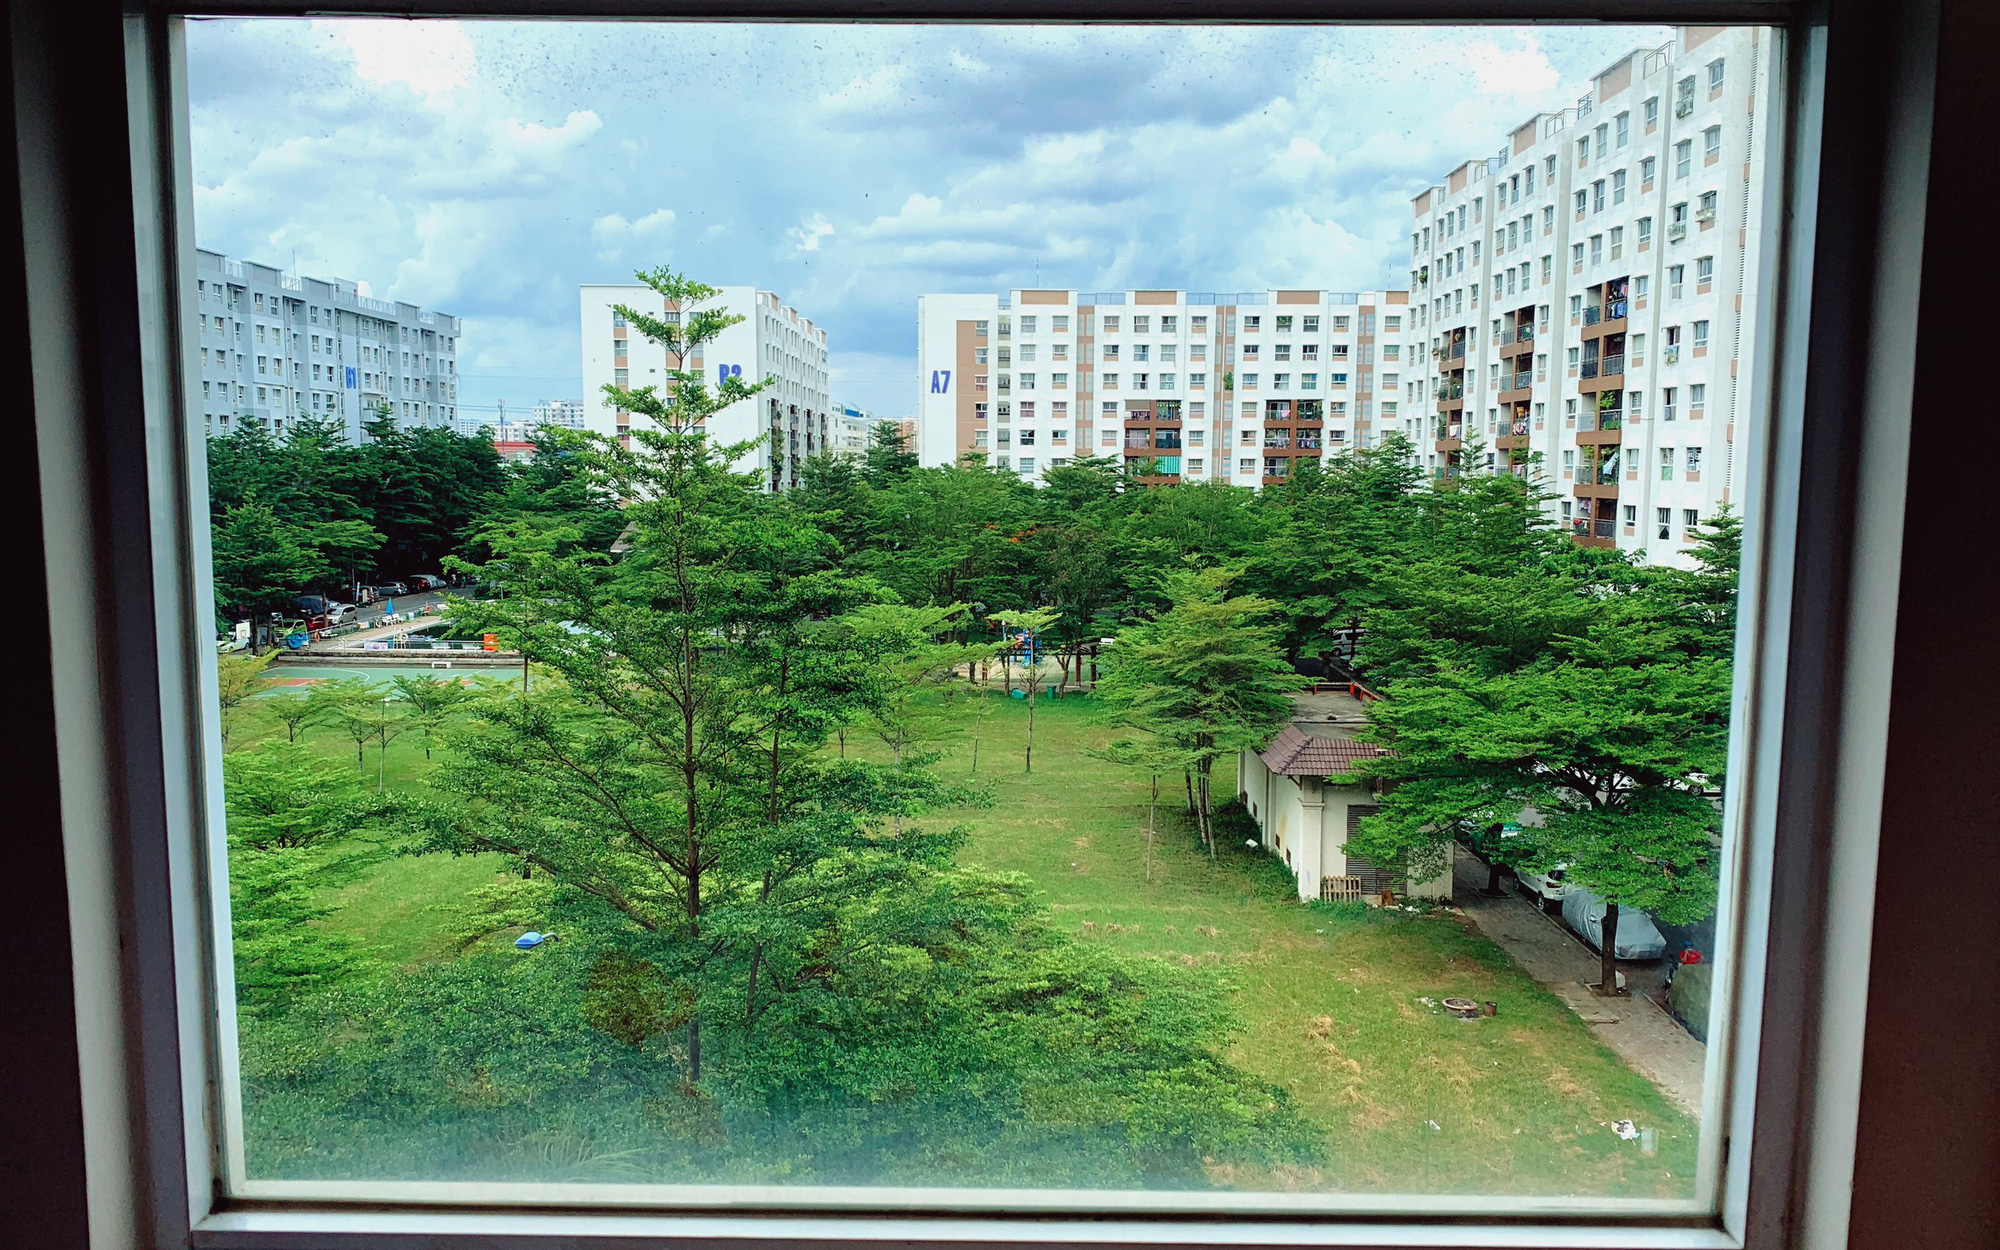 Những ô cửa sổ bình yên trong "tâm dịch" ở Sài Gòn: Ngoài đường vắng tanh, nhưng trong lòng ấm áp!